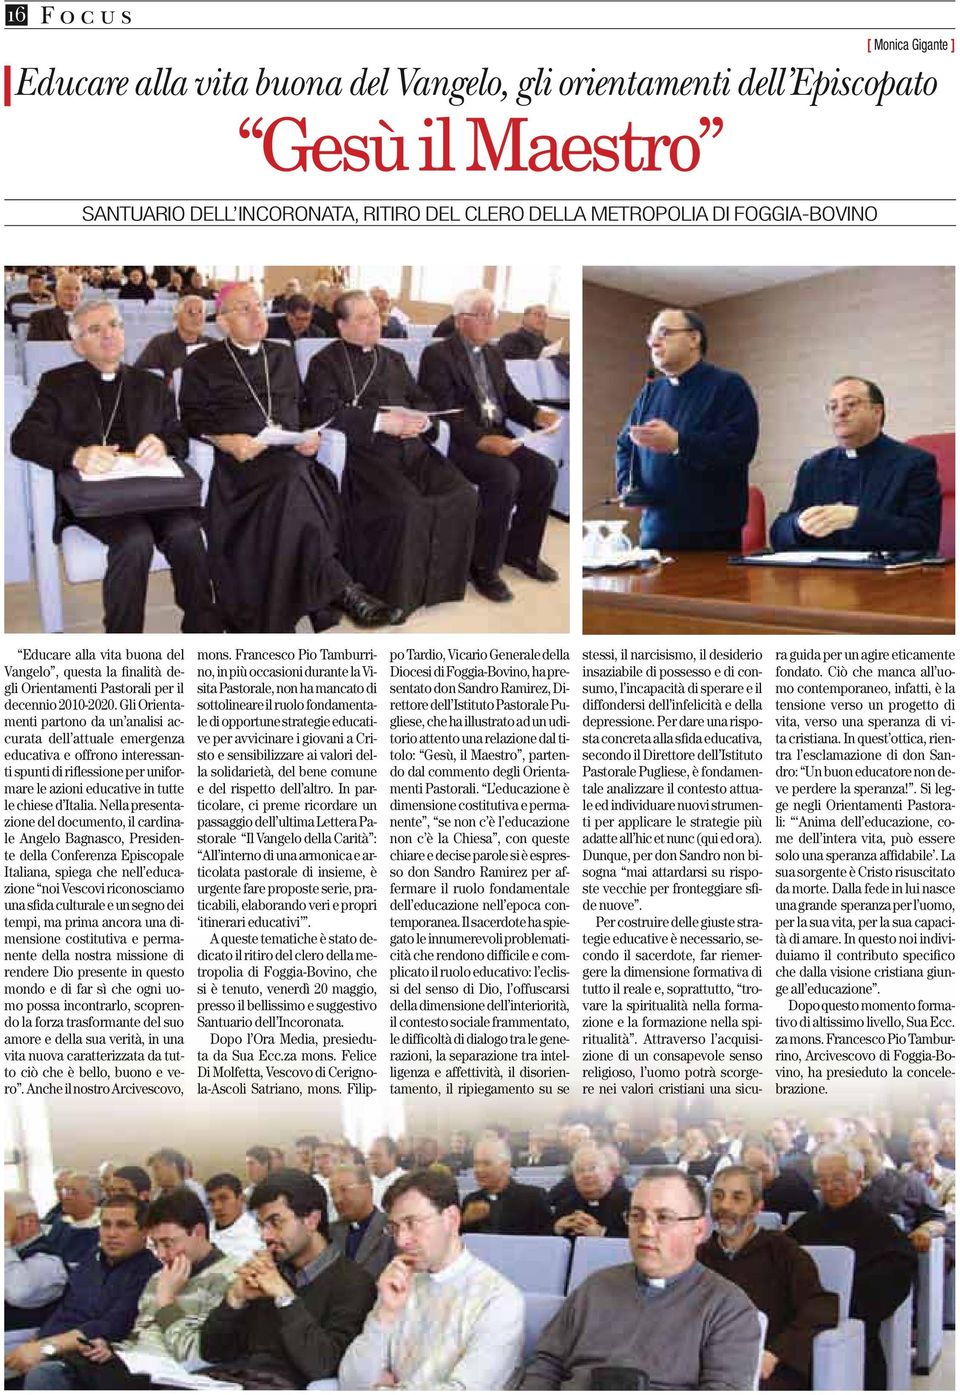 Gli Orientamenti partono da un analisi accurata dell attuale emergenza educativa e offrono interessanti spunti di riflessione per uniformare le azioni educative in tutte le chiese d Italia.